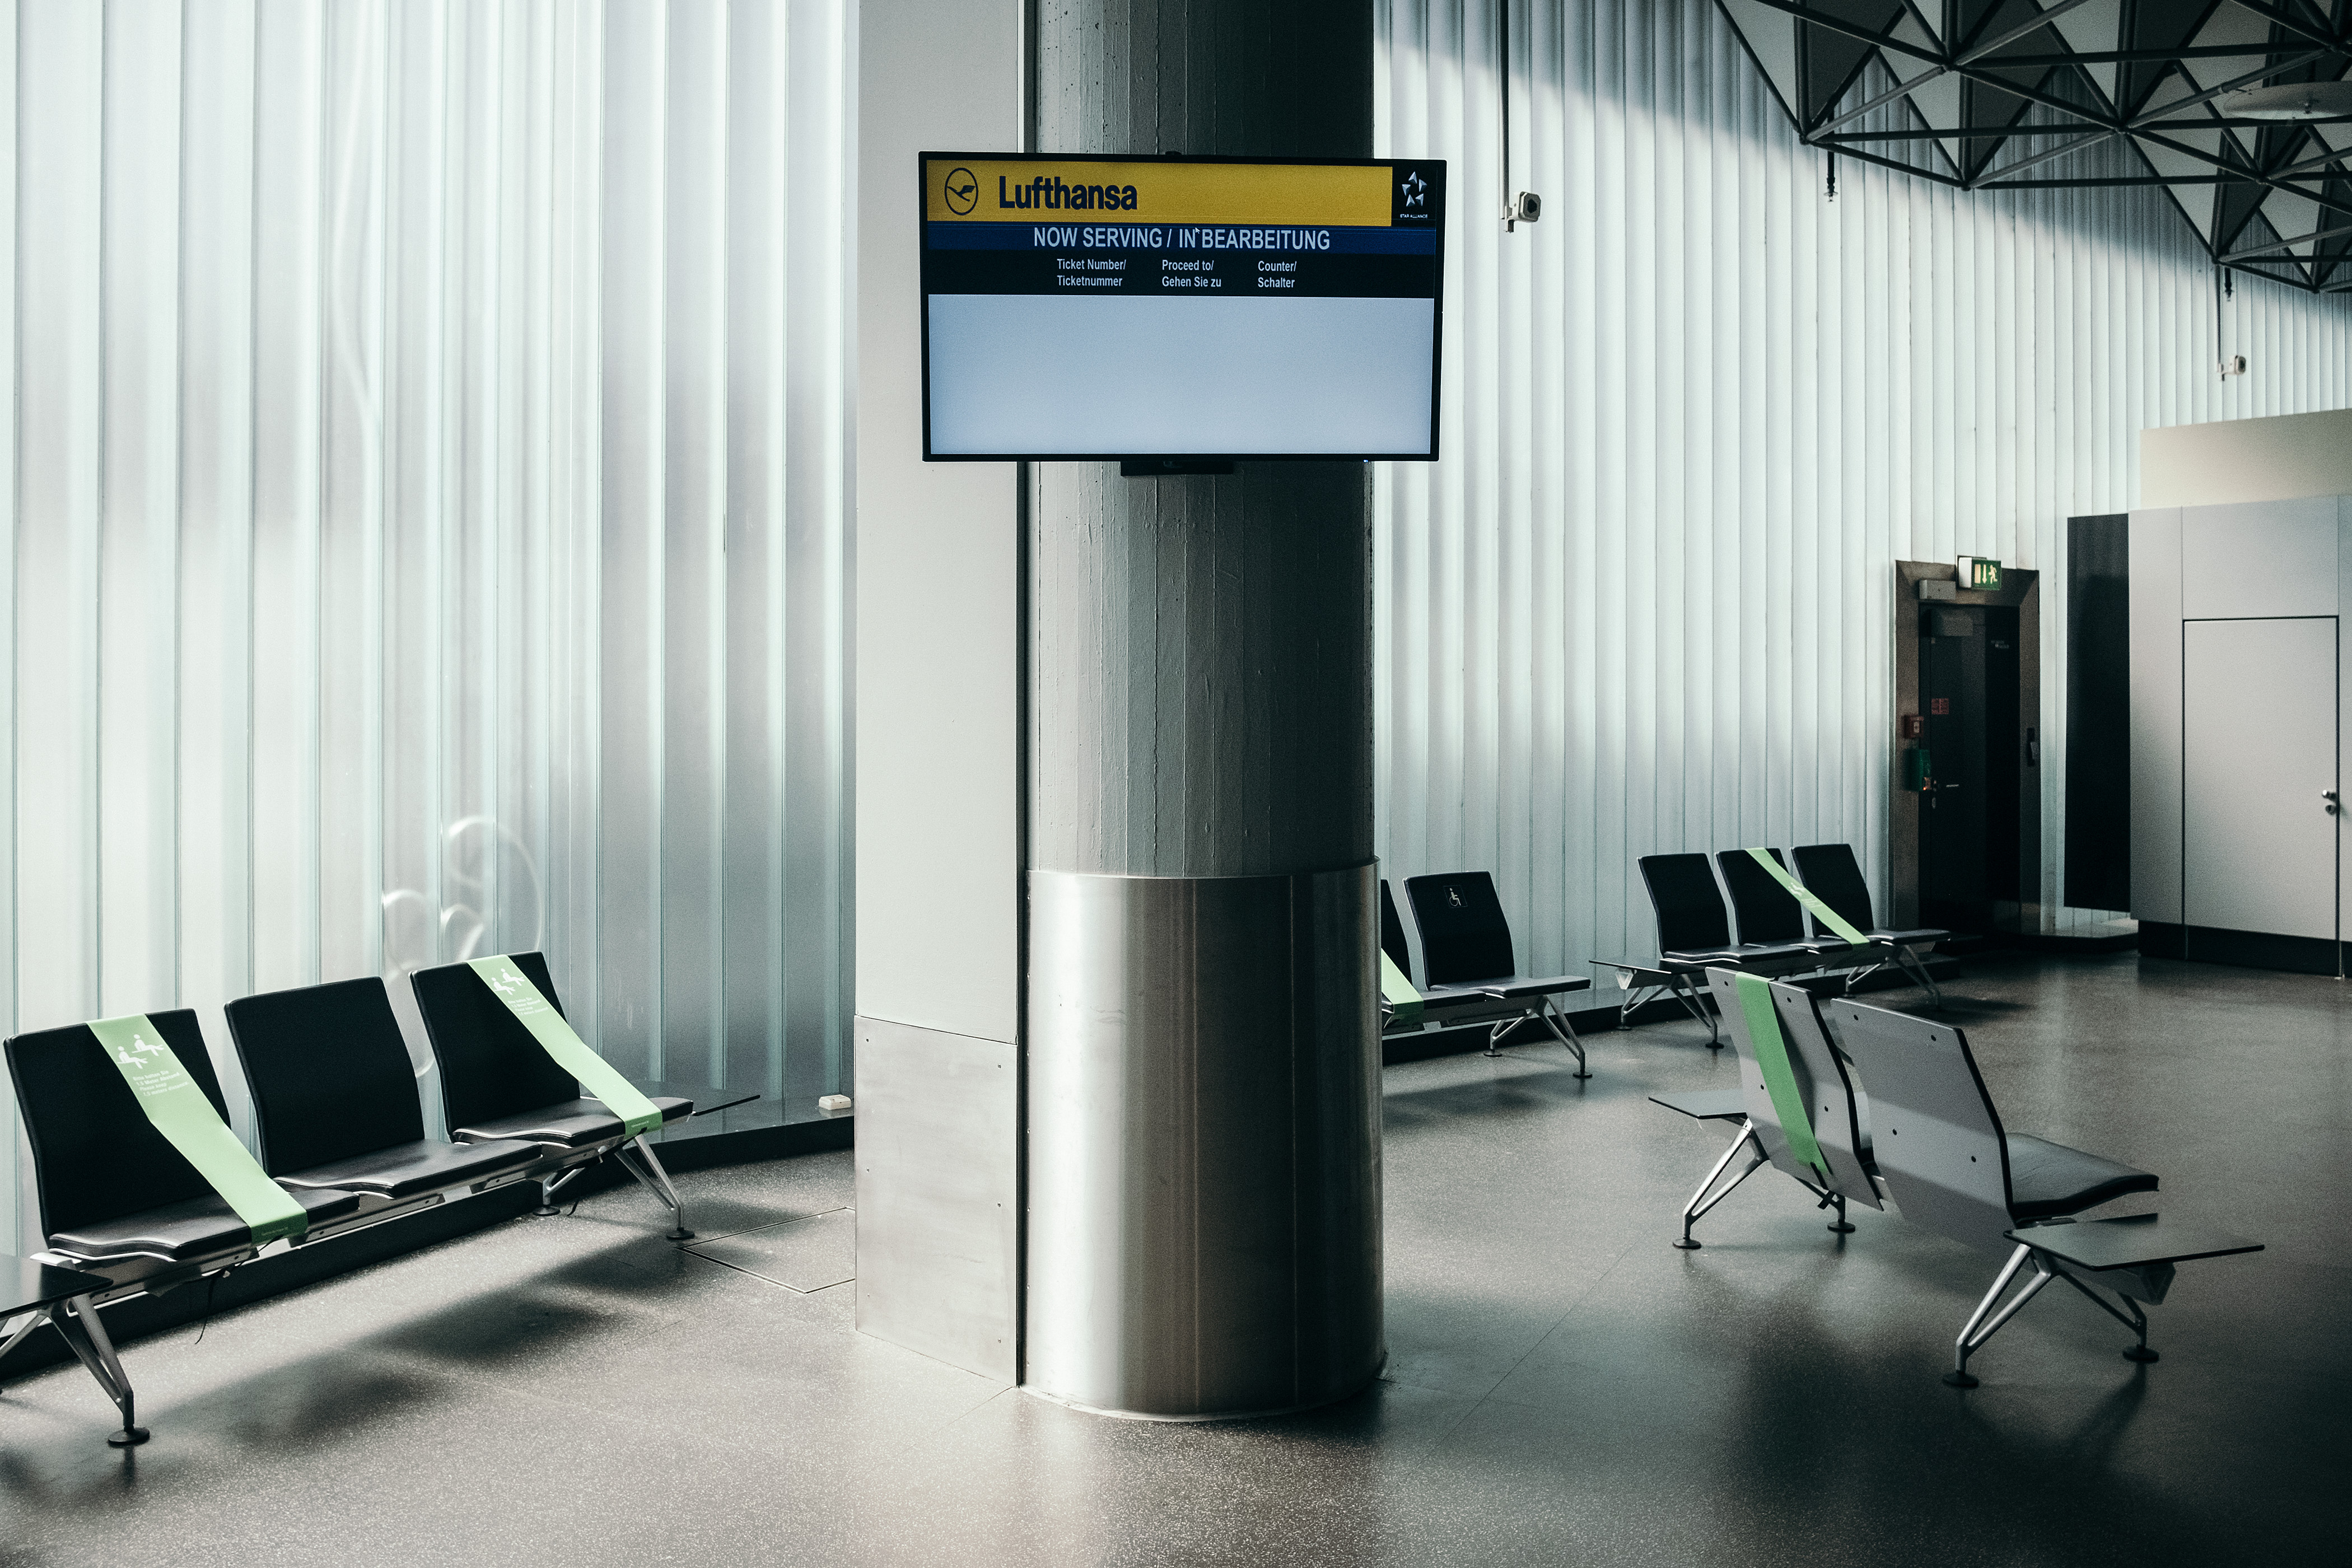 Un salón tranquilo en el aeropuerto de Frankfurt en Frankfurt, Alemania, el 3 de junio de 2020.  (Felix Schmitt / The New York Times)